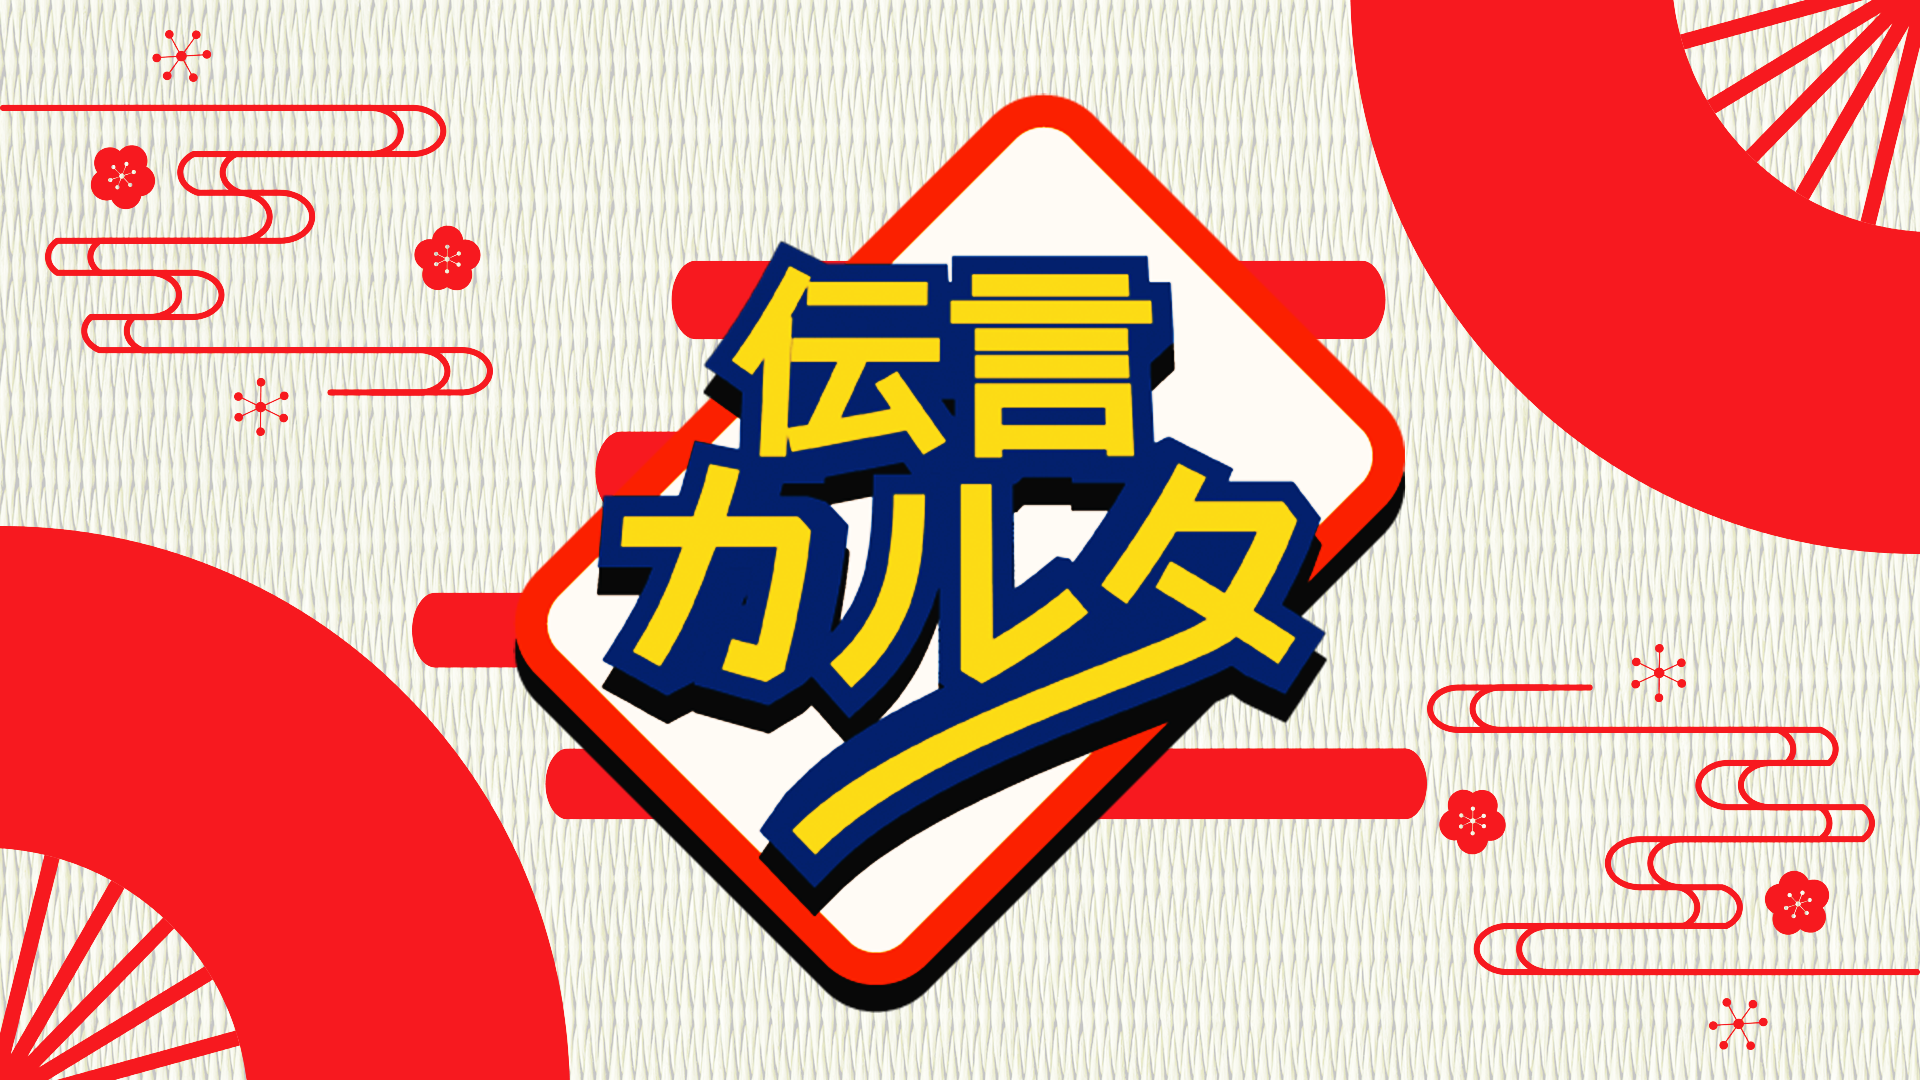 総合コンテンツサイト「竜平堂 (西野竜平)」の伝言ゲームとカルタが合体したカードゲーム「伝言カルタ」のバナー画像